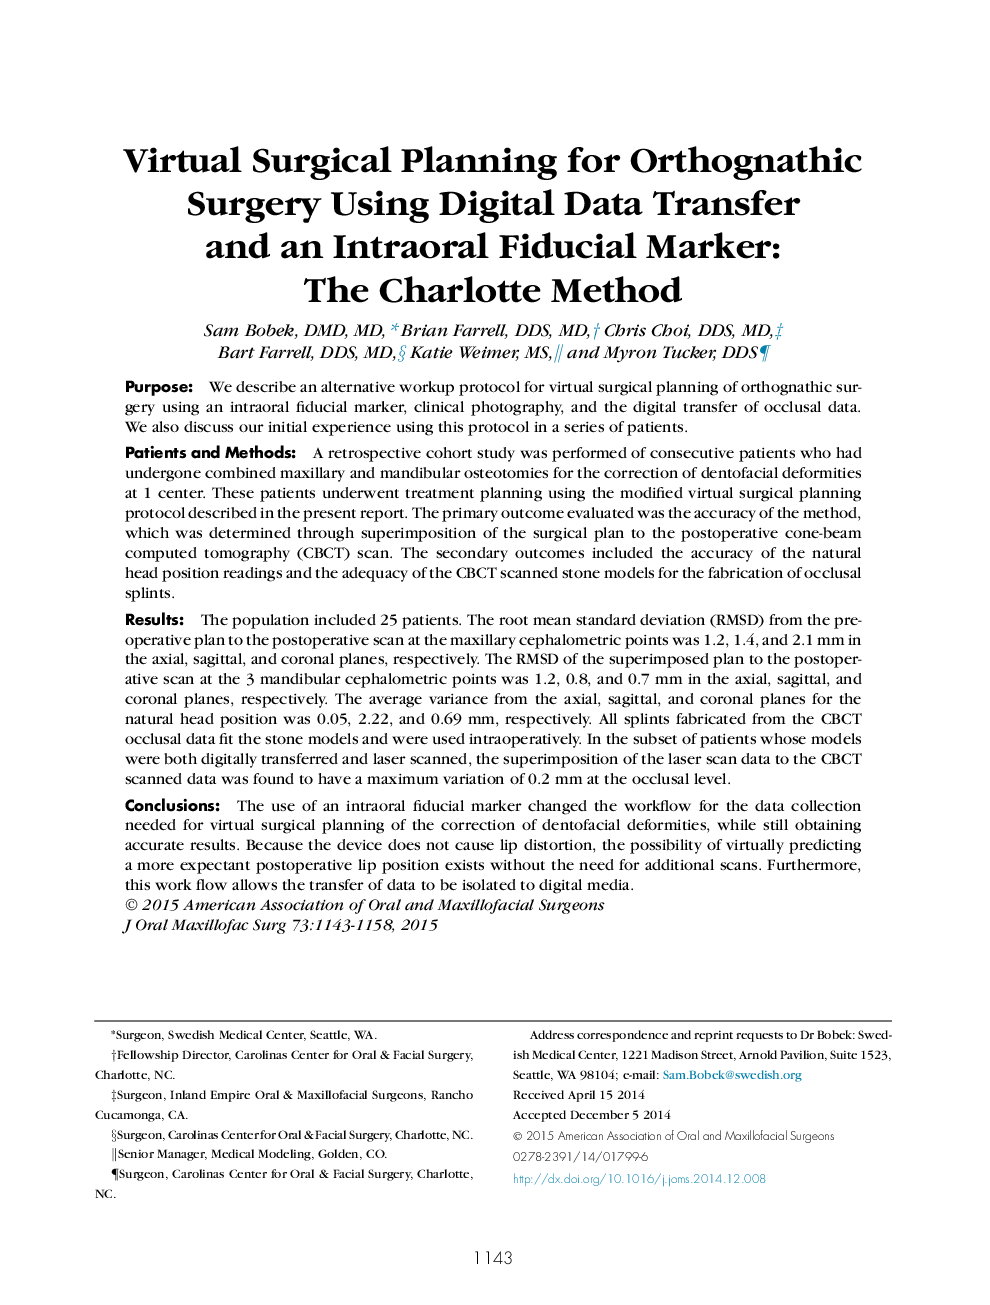 برنامه ریزی جراحی مجازی برای جراحی ارتوجنتی با استفاده از انتقال داده های دیجیتال و یک نشانگر فرسودگی داخل عضلانی: روش شارلوت 